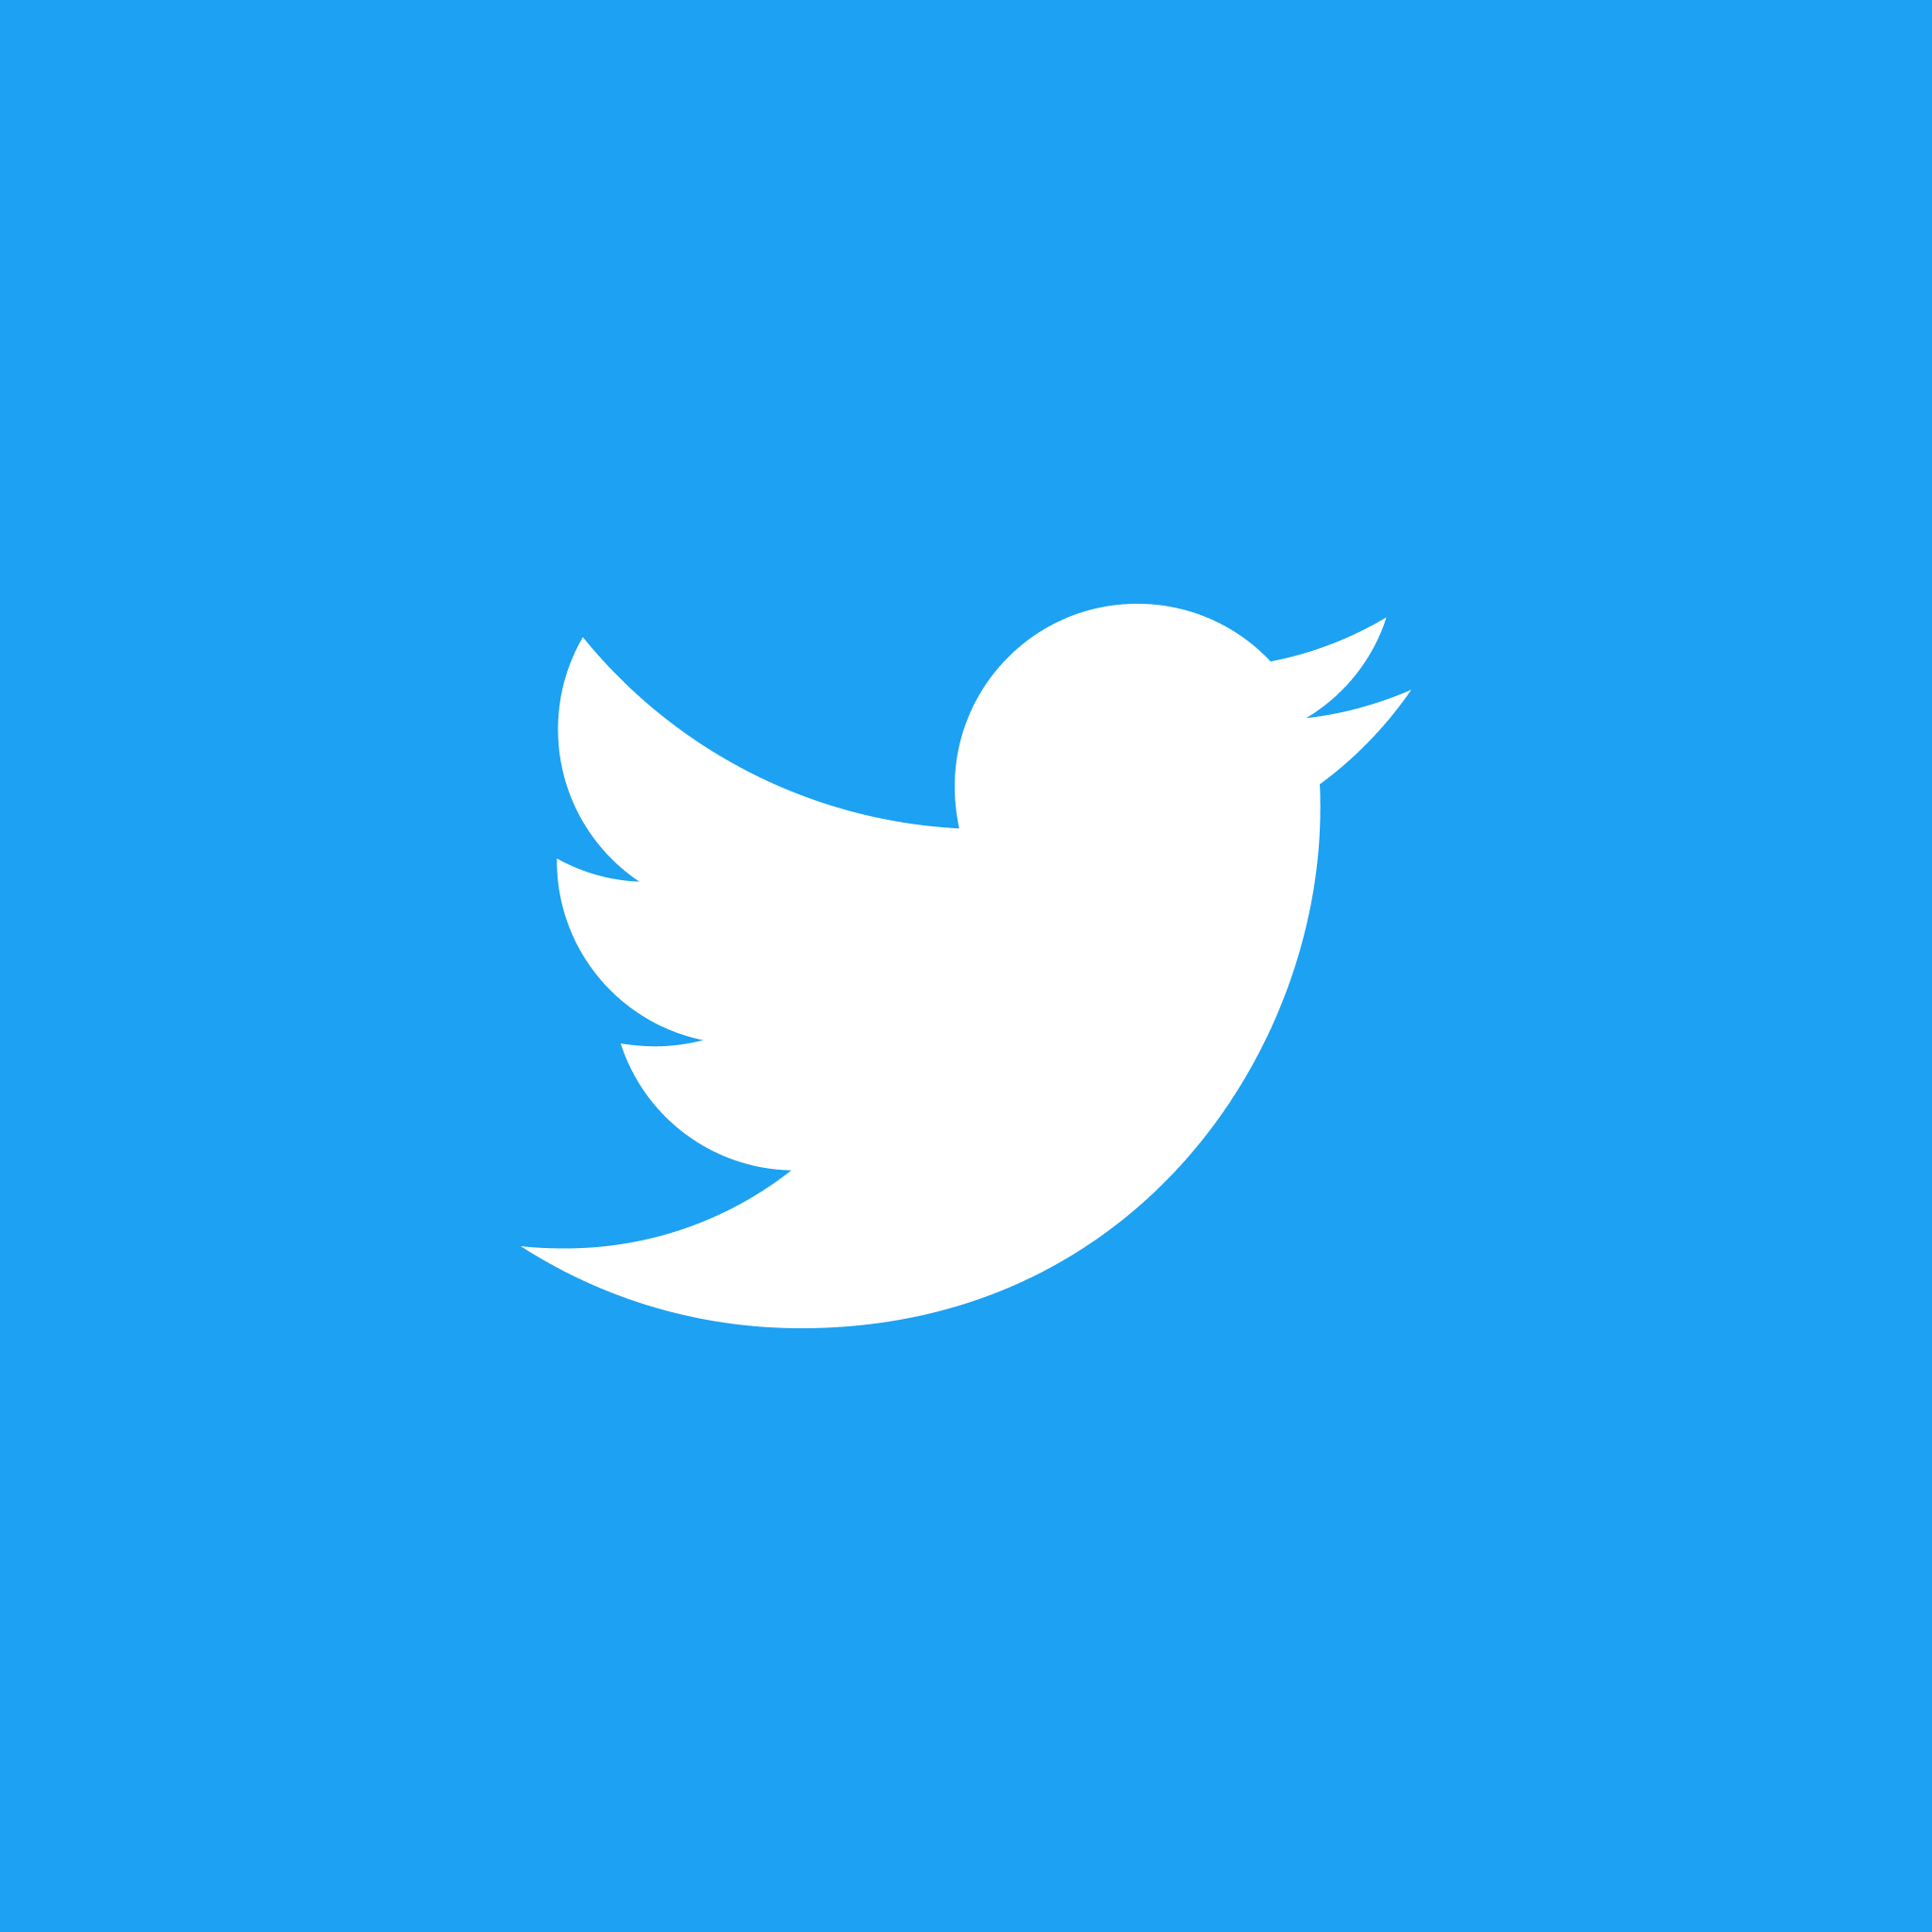 Imej #1 Cara Menukar Ikon Twitter daripada Tanda 'X' kepada Burung Biru